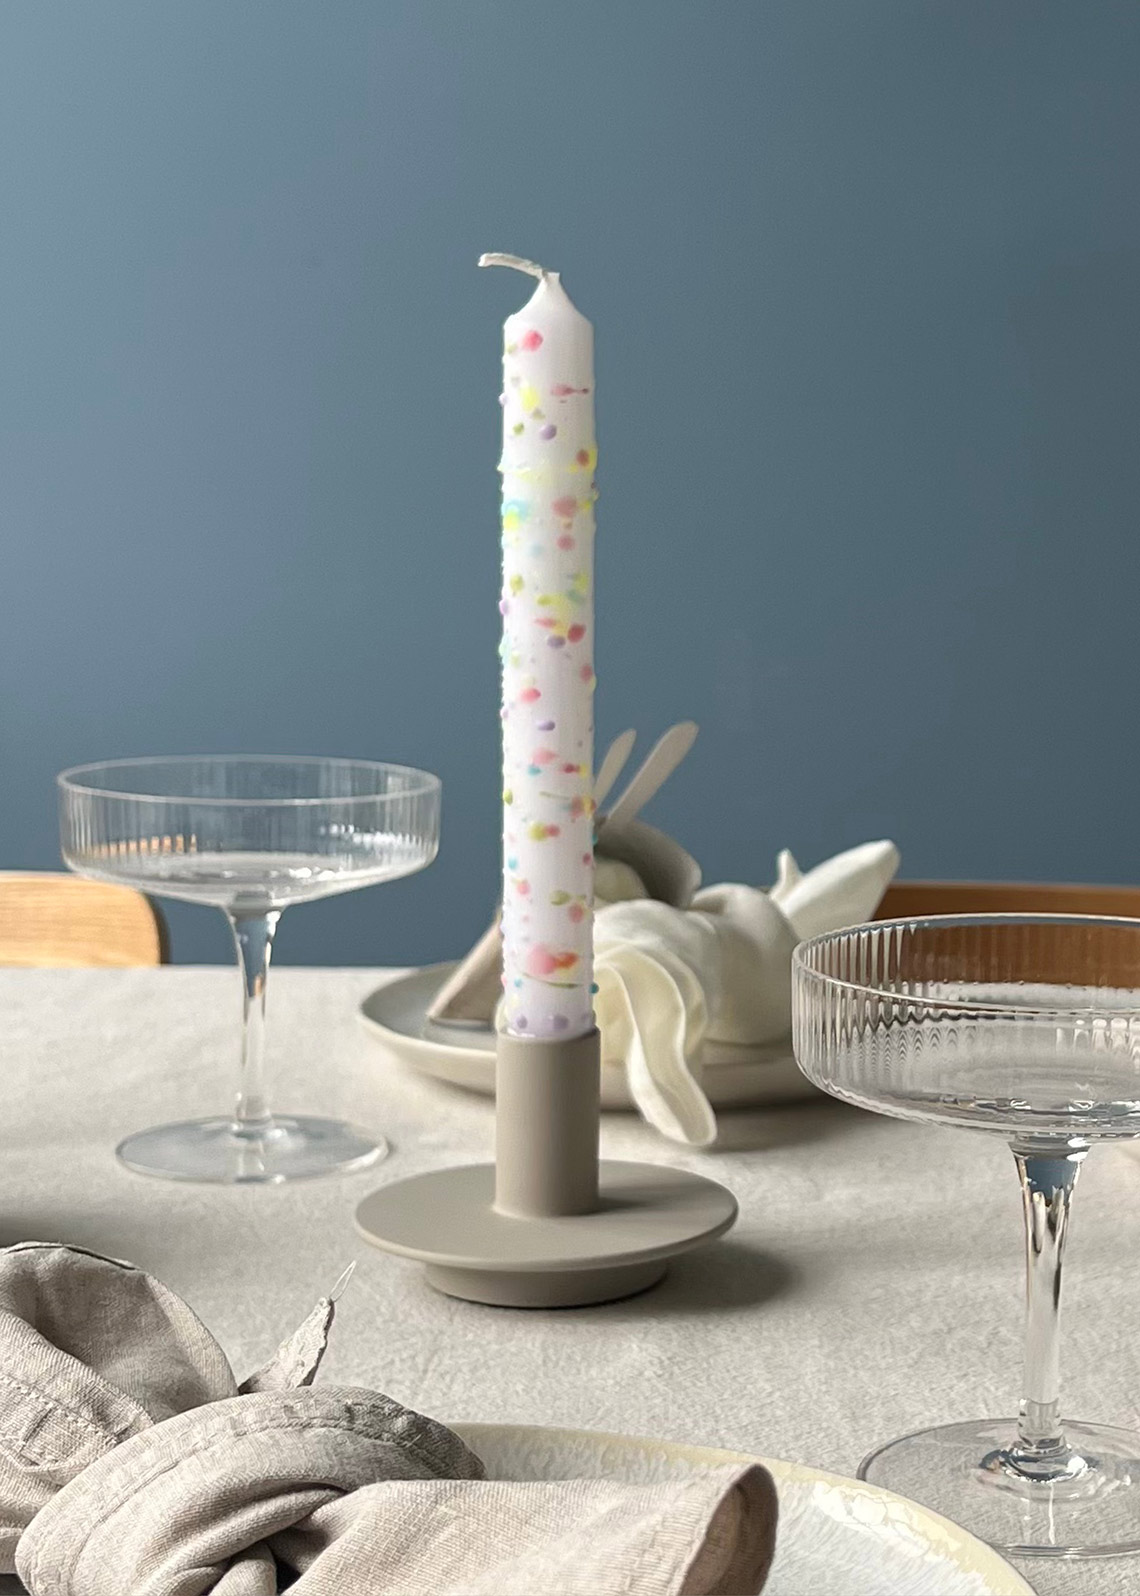 Fertiges DIY: Kerze mit Sprenkeln in bunten Farben auf dem Tisch